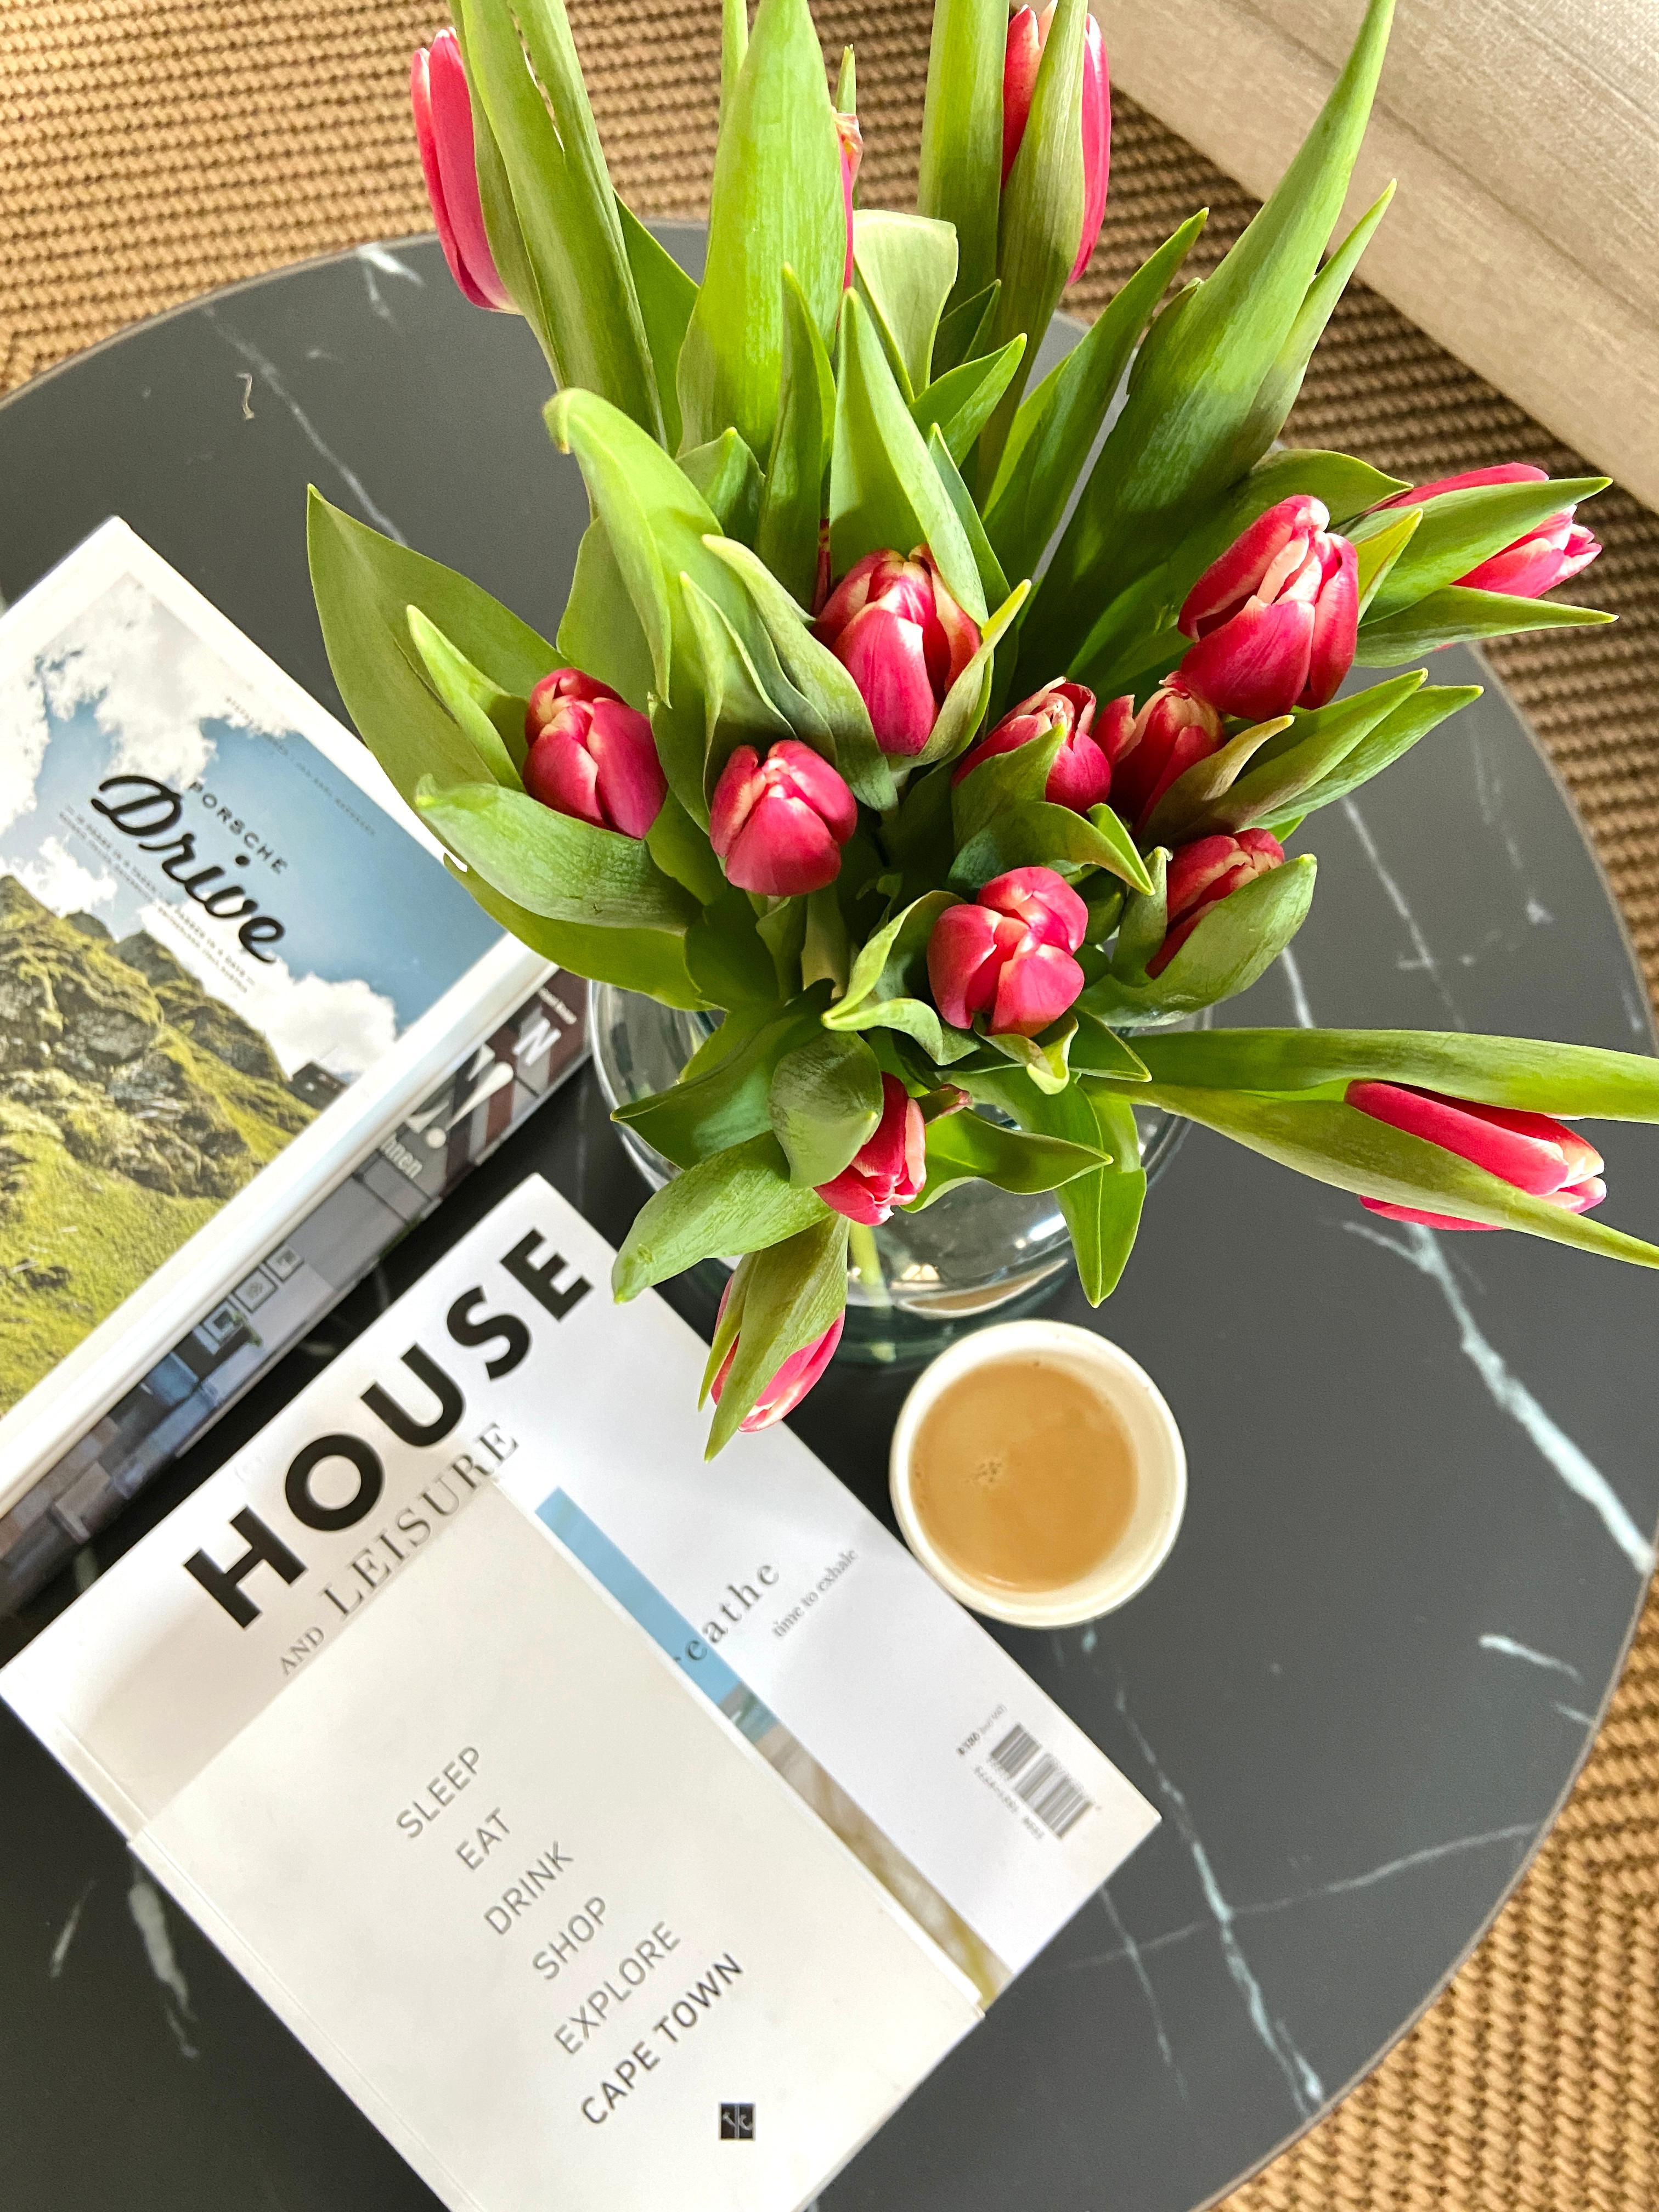 Schönes Wochenende ☕️ #freshflowerfriday#tulpen#kaffeepause#houseandleisure#capetown#coffeetablebooks#westwing